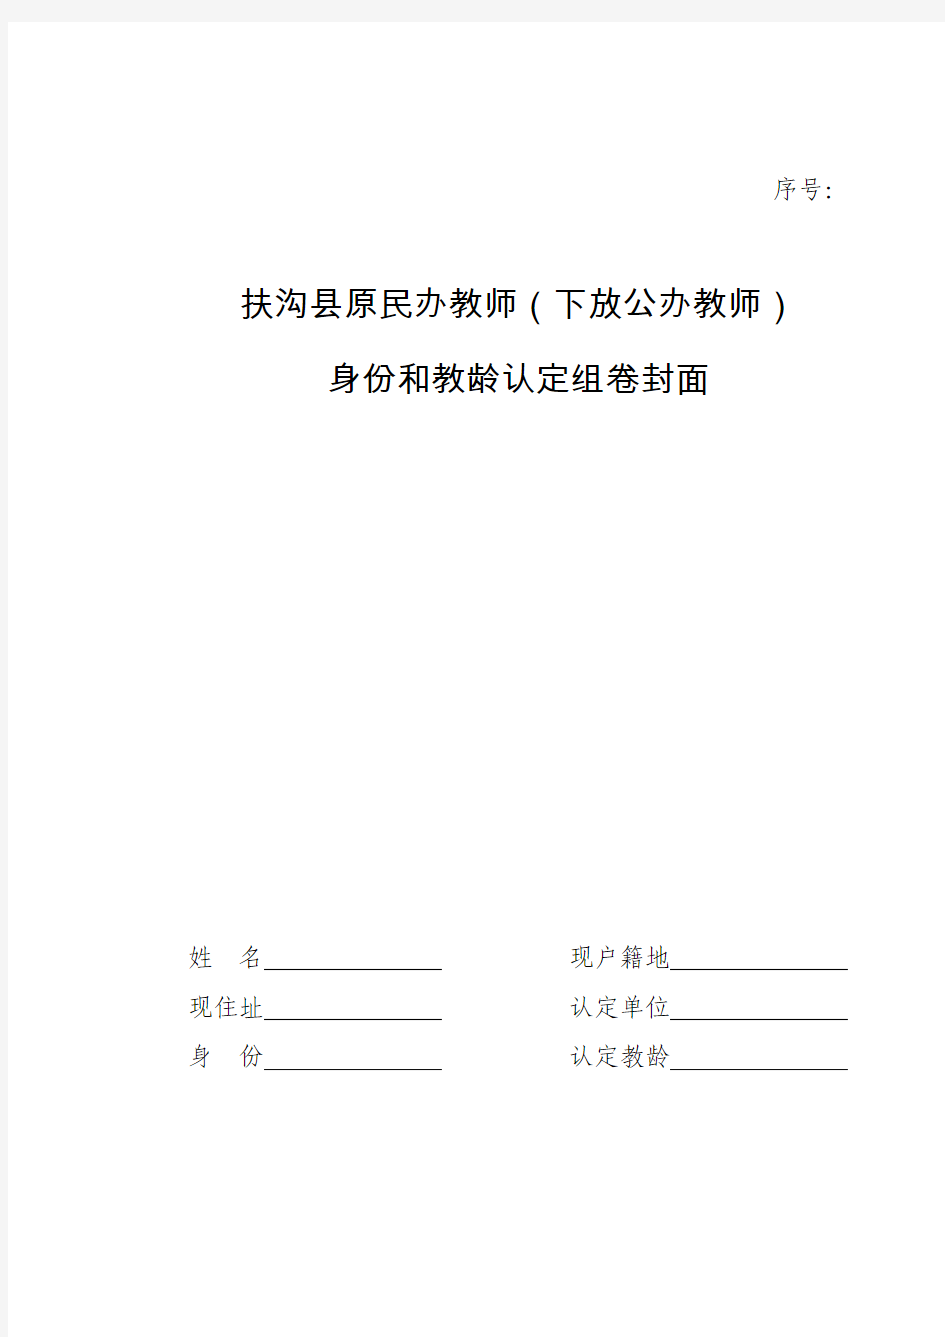 扶沟县原民办教师身份和教龄认定组卷封面